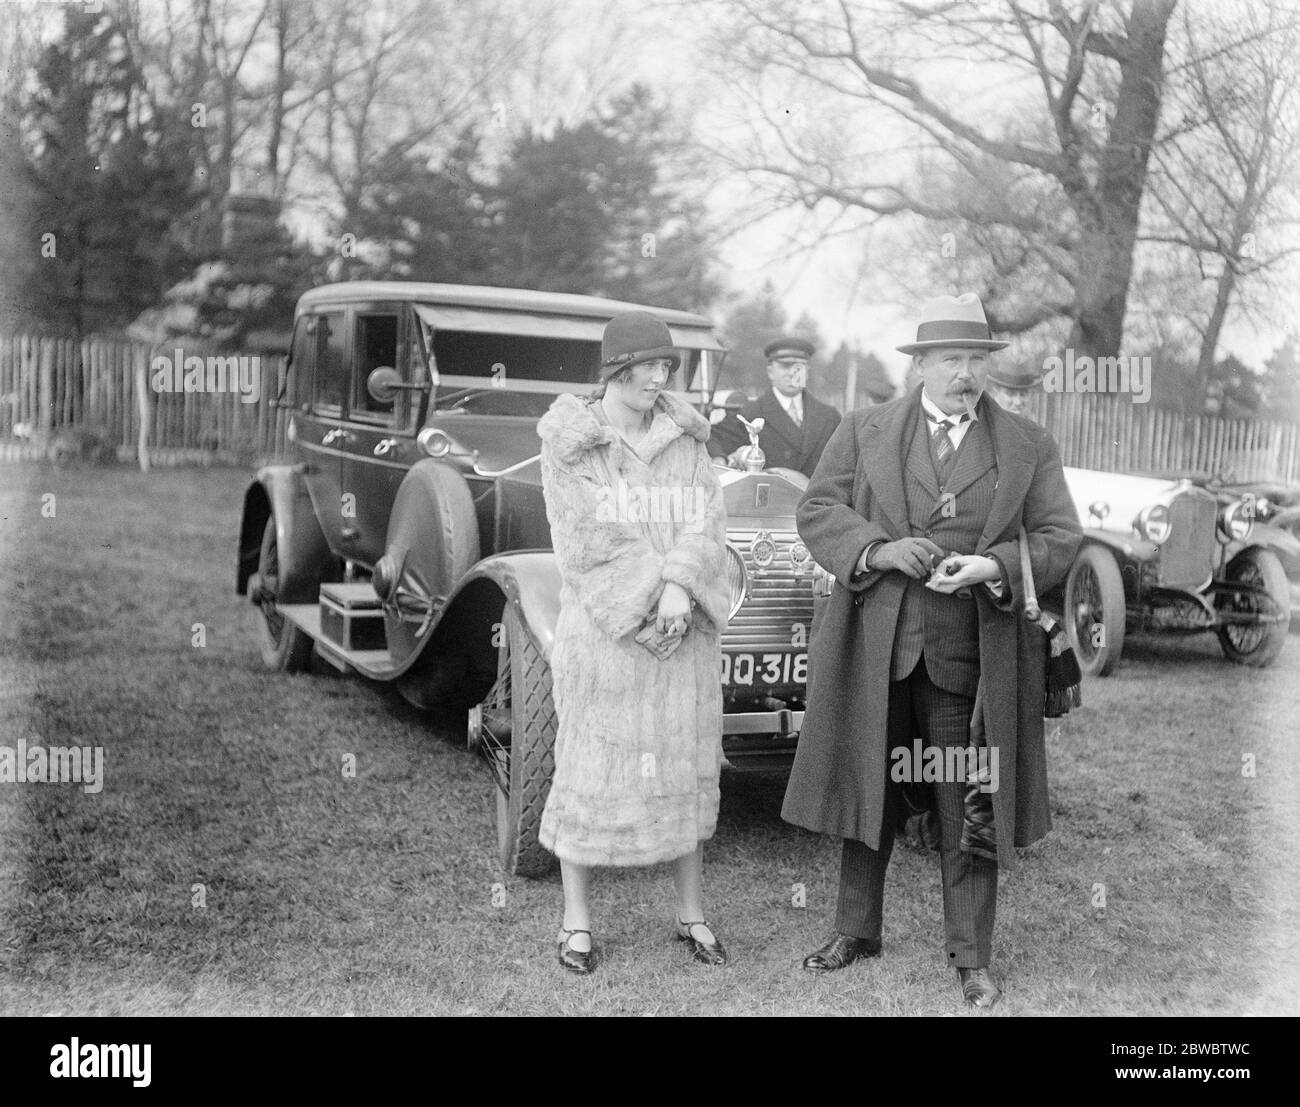 Polo Saison beginnt mit Hurlingham Frühjahr Handicap Turnier im Worcester Park, Malden. Sir John Lee, MP, mit seiner Tochter, zwei der interessierten Zuschauer. 20. April 1925 Stockfoto